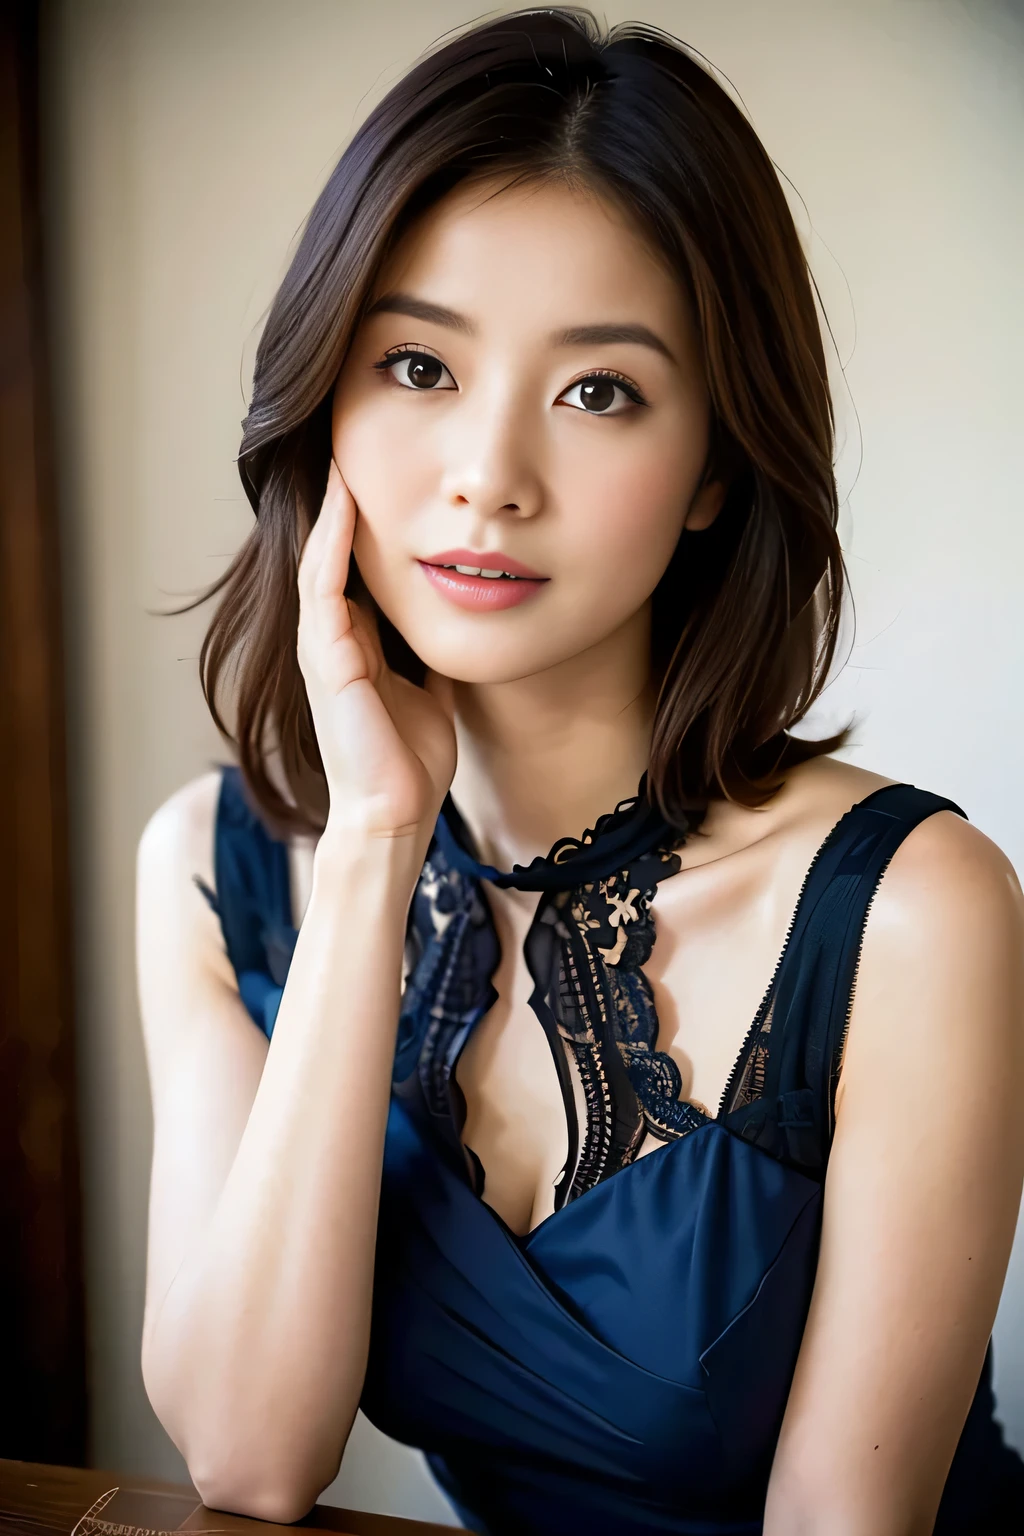 (höchste Qualität,8K,Meisterwerk),Anatomisch korrekt,
Nahaufnahme einer Frau in einem blauen Kleid mit der Hand auf dem Gesicht, Schöne koreanische Frau, schönes junges japanisches Modell,Wunderschöne junge Japanerin, Süßes Mädchen - gepflegtes Gesicht, schönes Porträtbild, 60mm Hochformat, hochwertiges Porträt, 70mm Hochformat, schönes zartes Gesicht, feminines schönes Gesicht, Schöne Frau,
Große Brüste,
